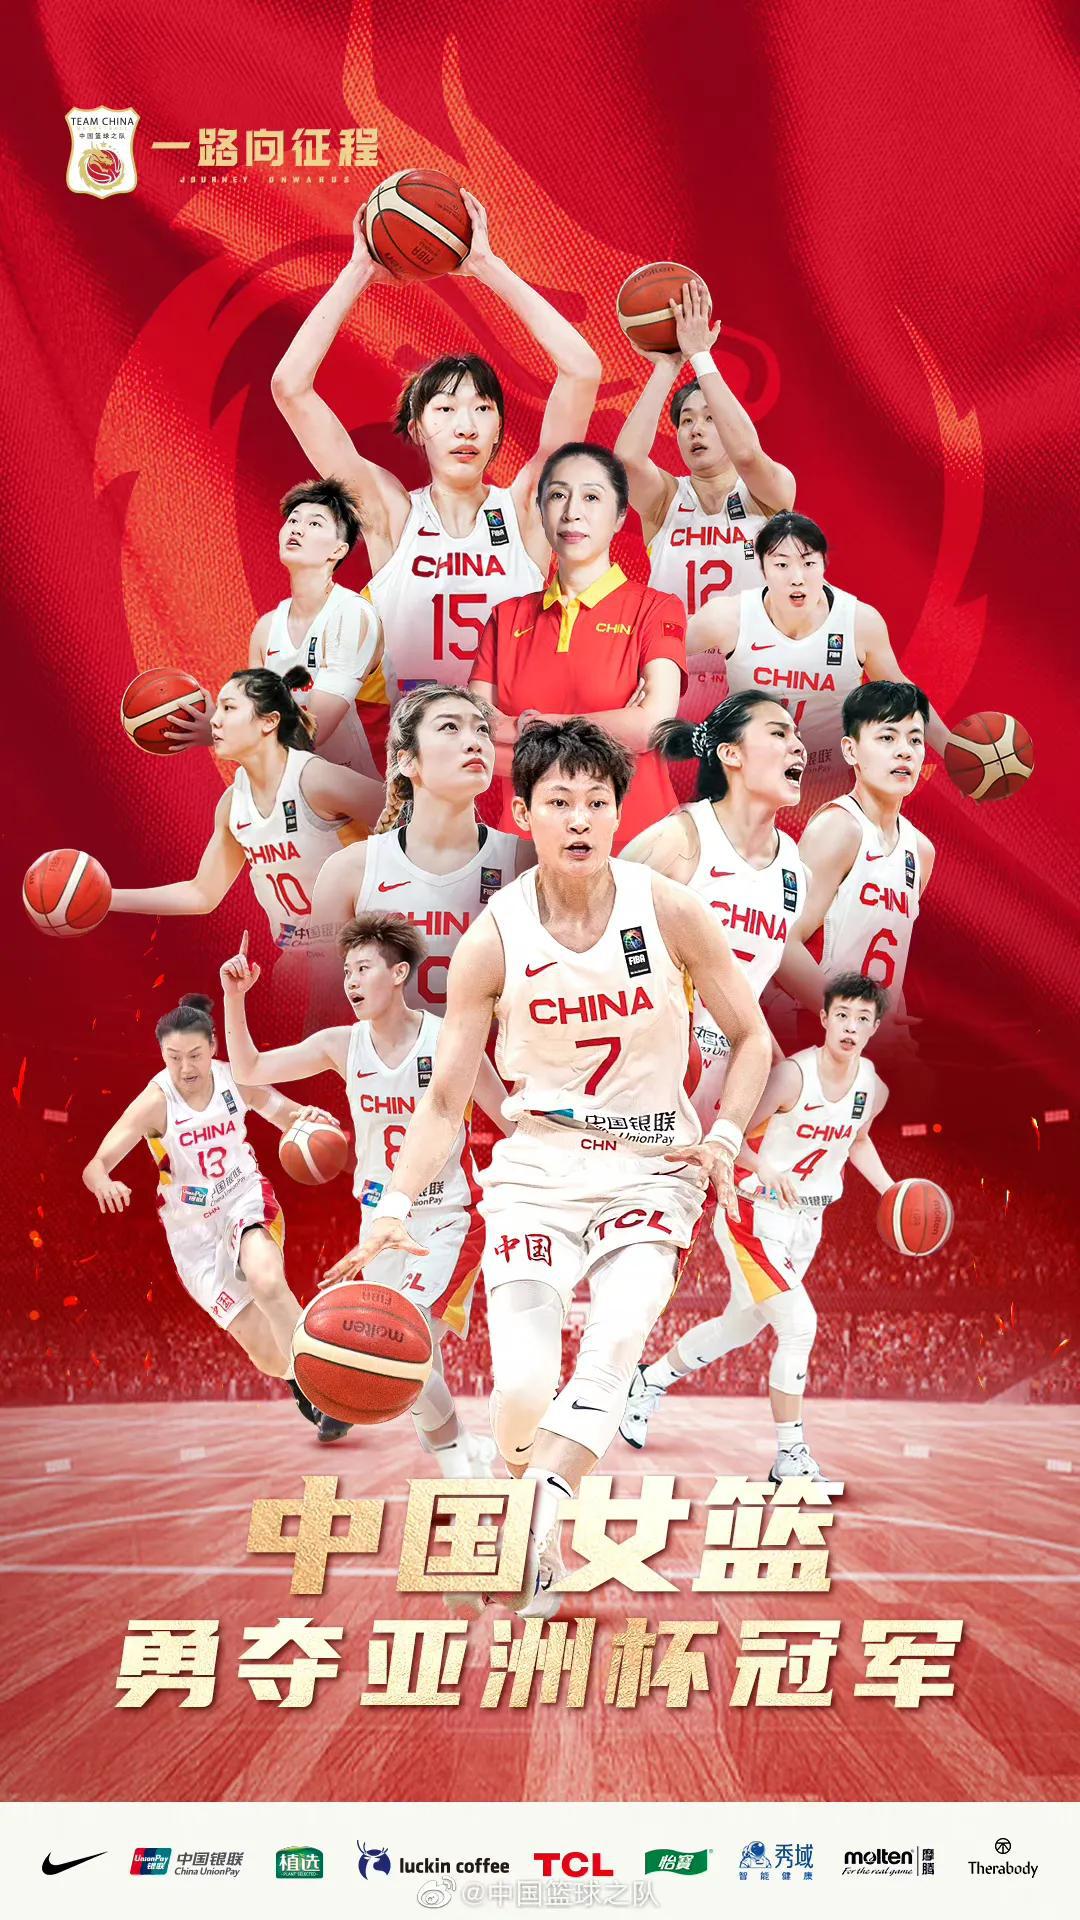 亚洲女篮世界杯，中国73:71日本，我产生了2个无尽的感慨

1、女篮精神依旧存